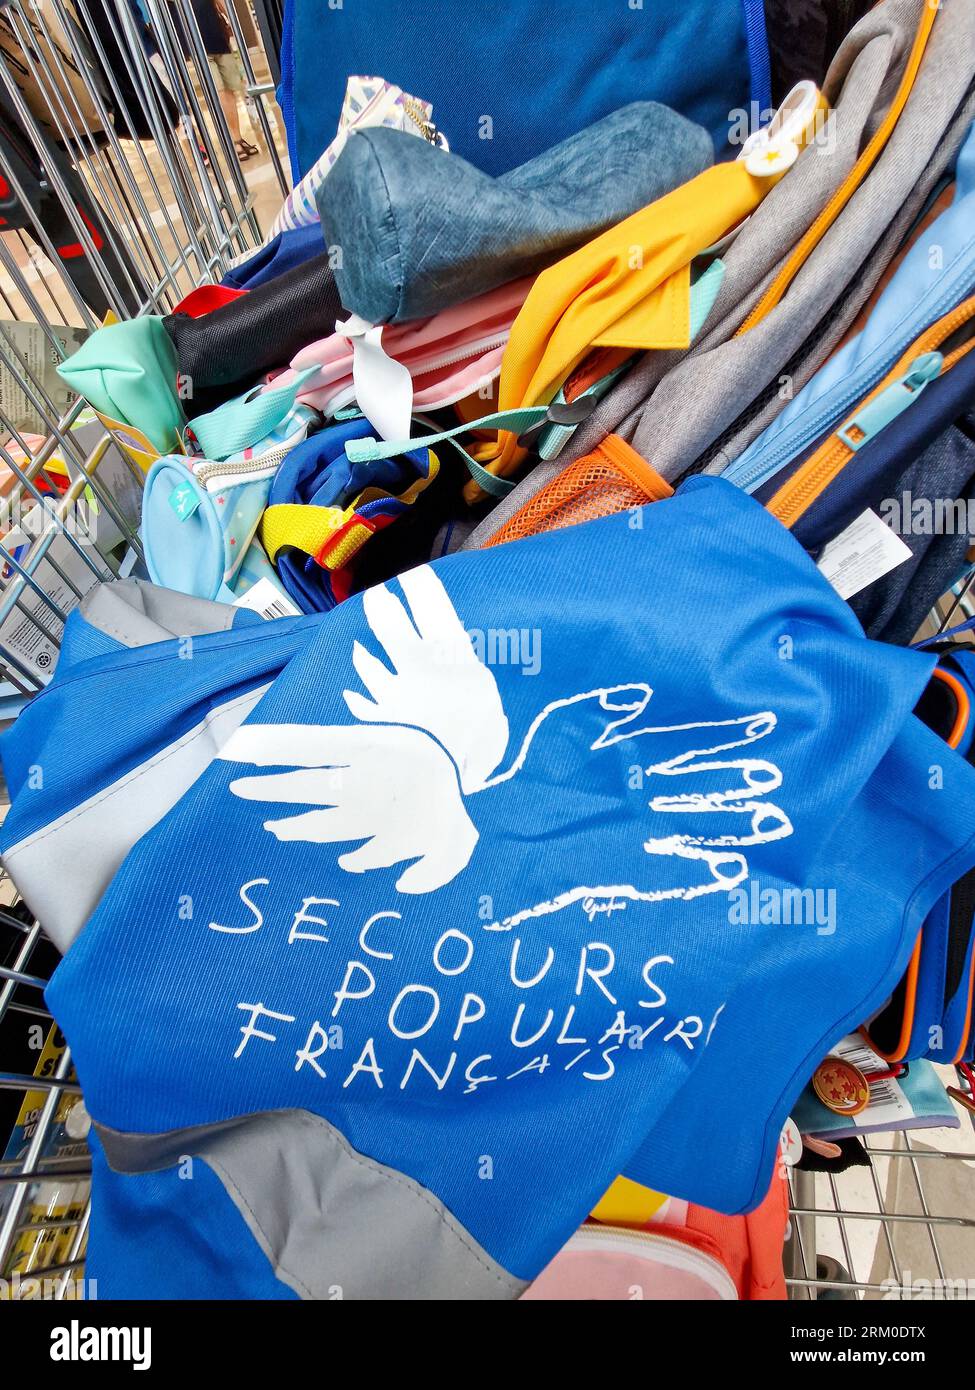 ONG française secours populaire - Popular Help, collecte des fournitures scolaires pour les élèves défavorisés, Saint-Priest, France Banque D'Images